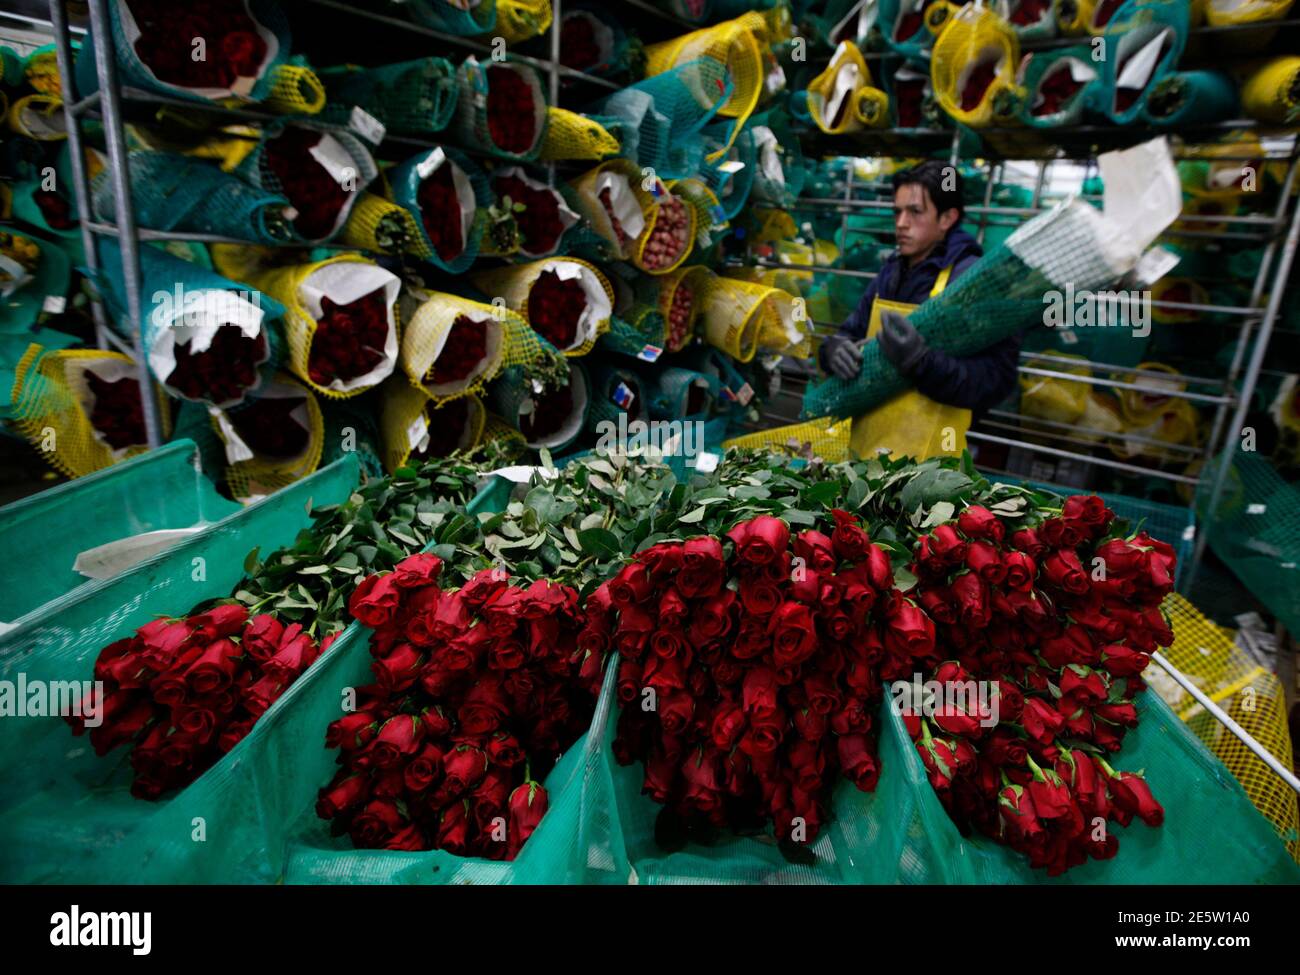 Ein Arbeiter bereitet Rosen für den Export vor Valentinstag bei Elite Flowers in Facatativa 6. Februar 2013. Der Valentinstag wird am 14. Februar gefeiert, und viele Menschen schenken ihren Lieben Blumen als Zeichen ihrer Zuneigung. Aber eine unruhige Weltwirtschaft hat einige Züchter in Kolumbien besorgt über die diesjährige Ernte. REUTERS/John Vizcaino (KOLUMBIEN - Tags: GESCHÄFTSUMFELD) Stockfoto